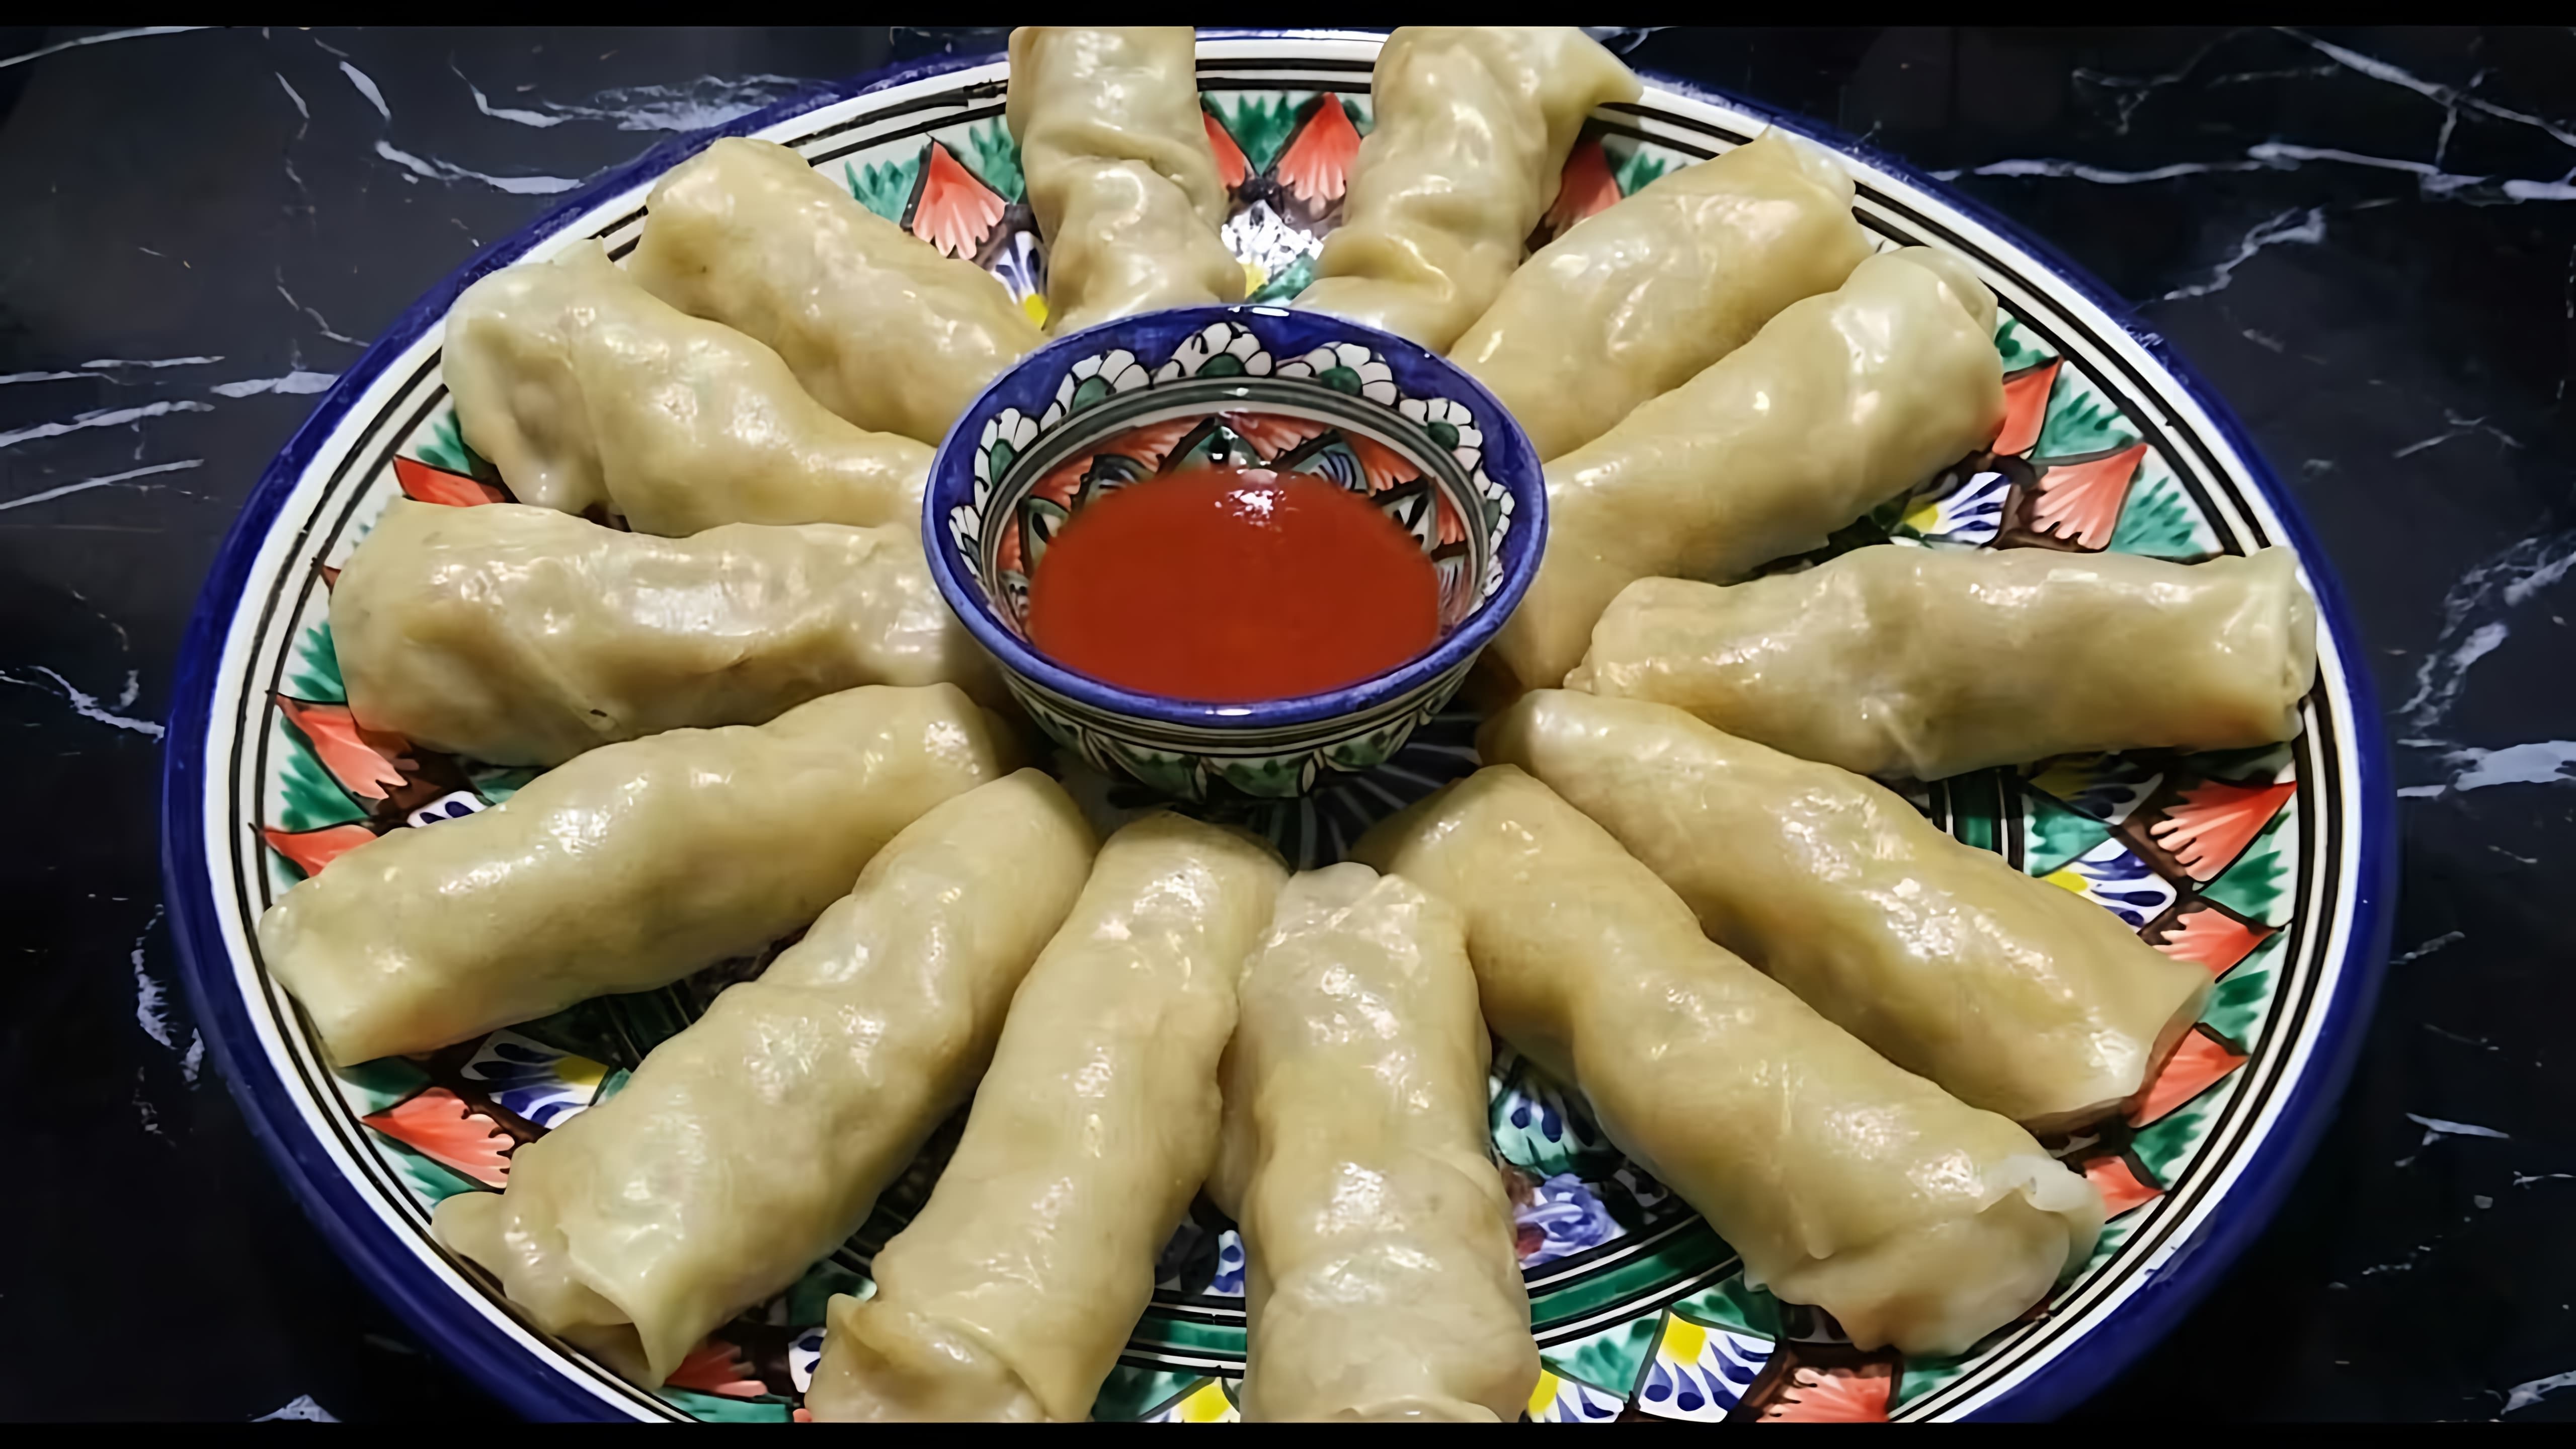 "Покоряет сразу, Хоть каждый день подавайте / Хамир хасип  / Узбекская кухня" - это видео-ролик, который представляет собой обзор узбекской кухни